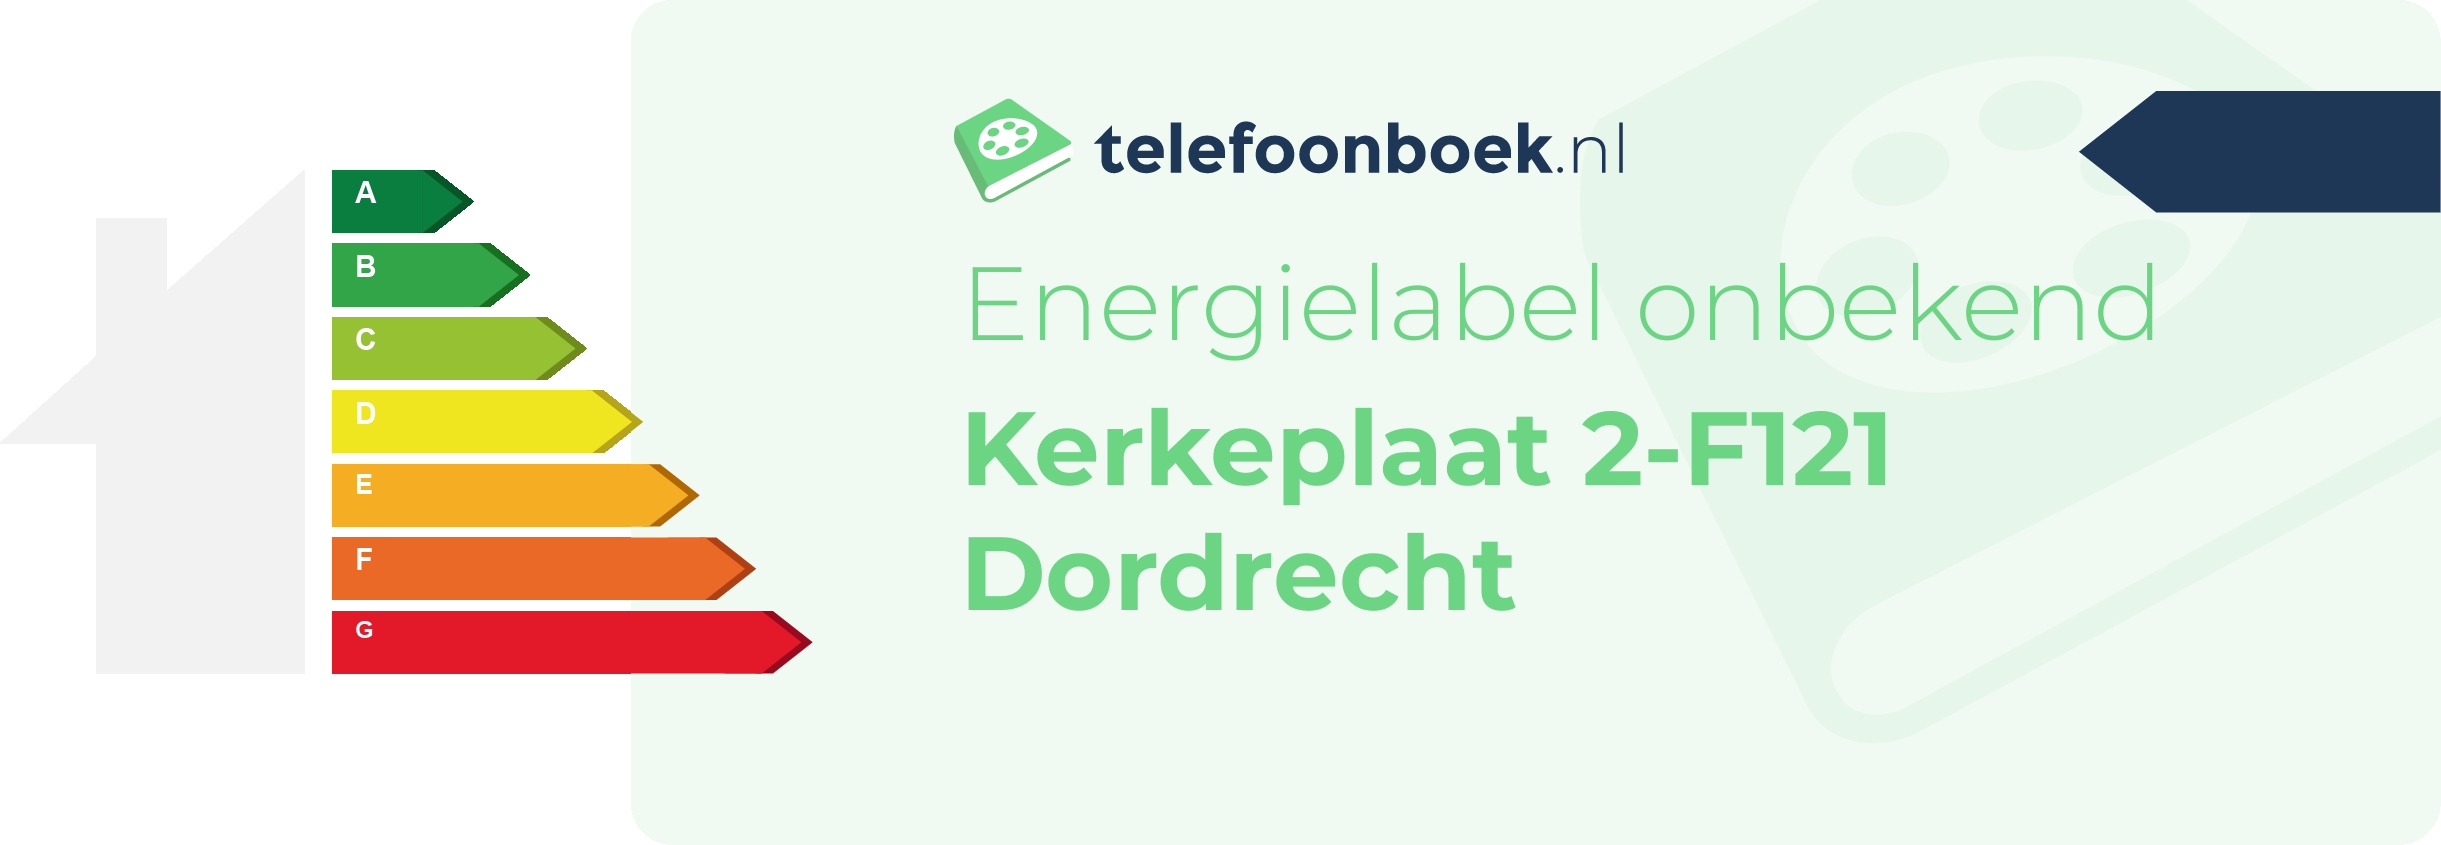 Energielabel Kerkeplaat 2-F121 Dordrecht